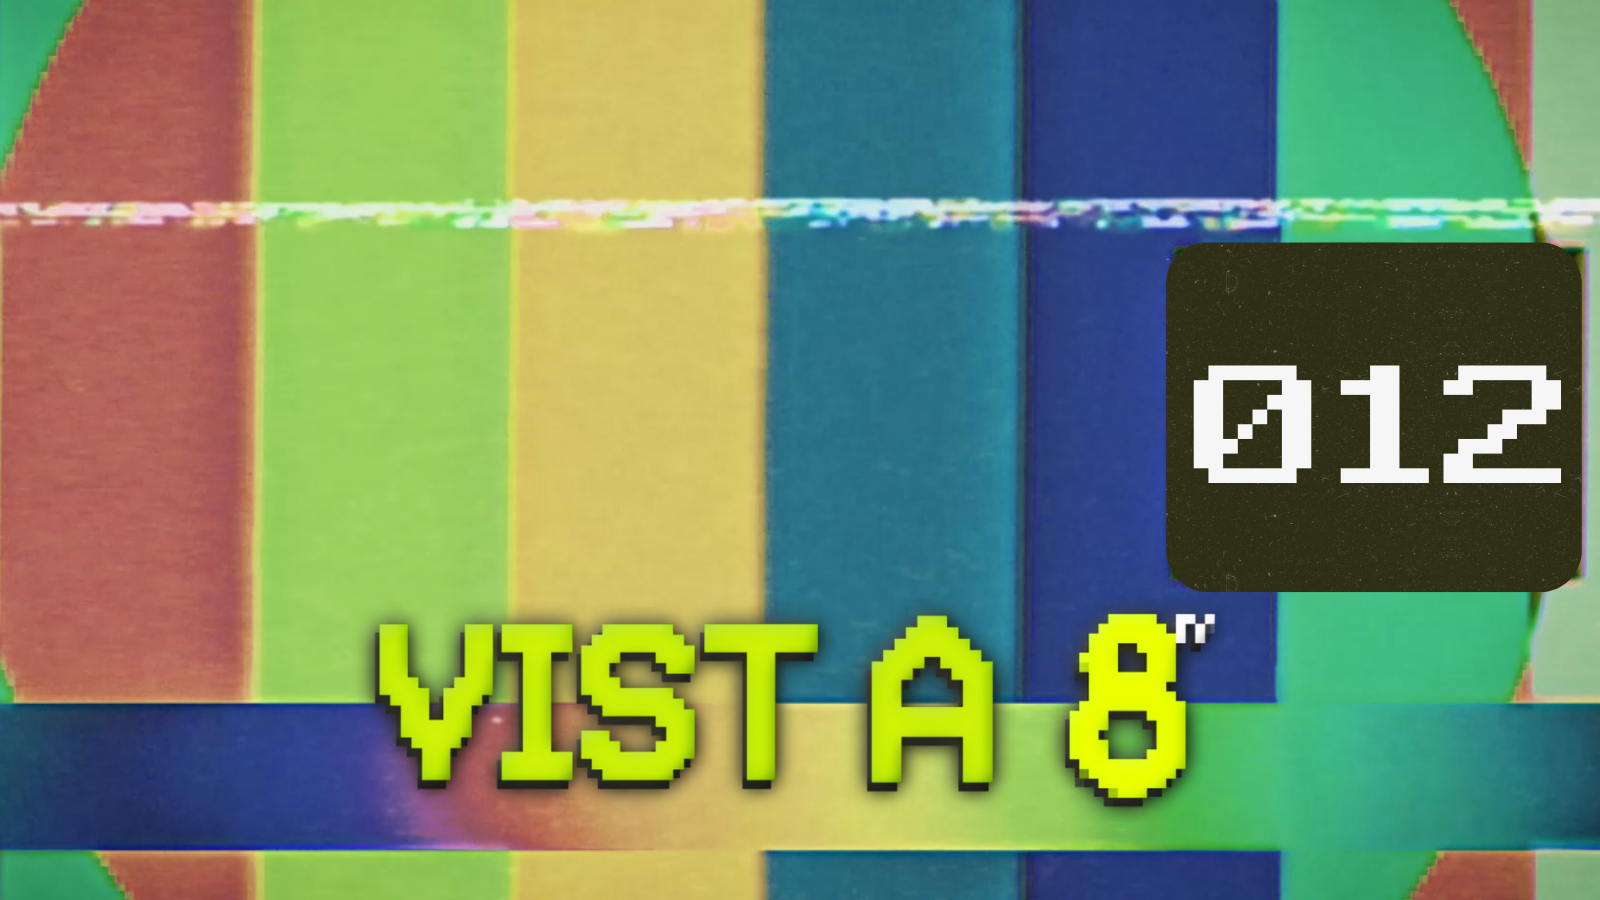 VIST A 8TV - EPISODI 12